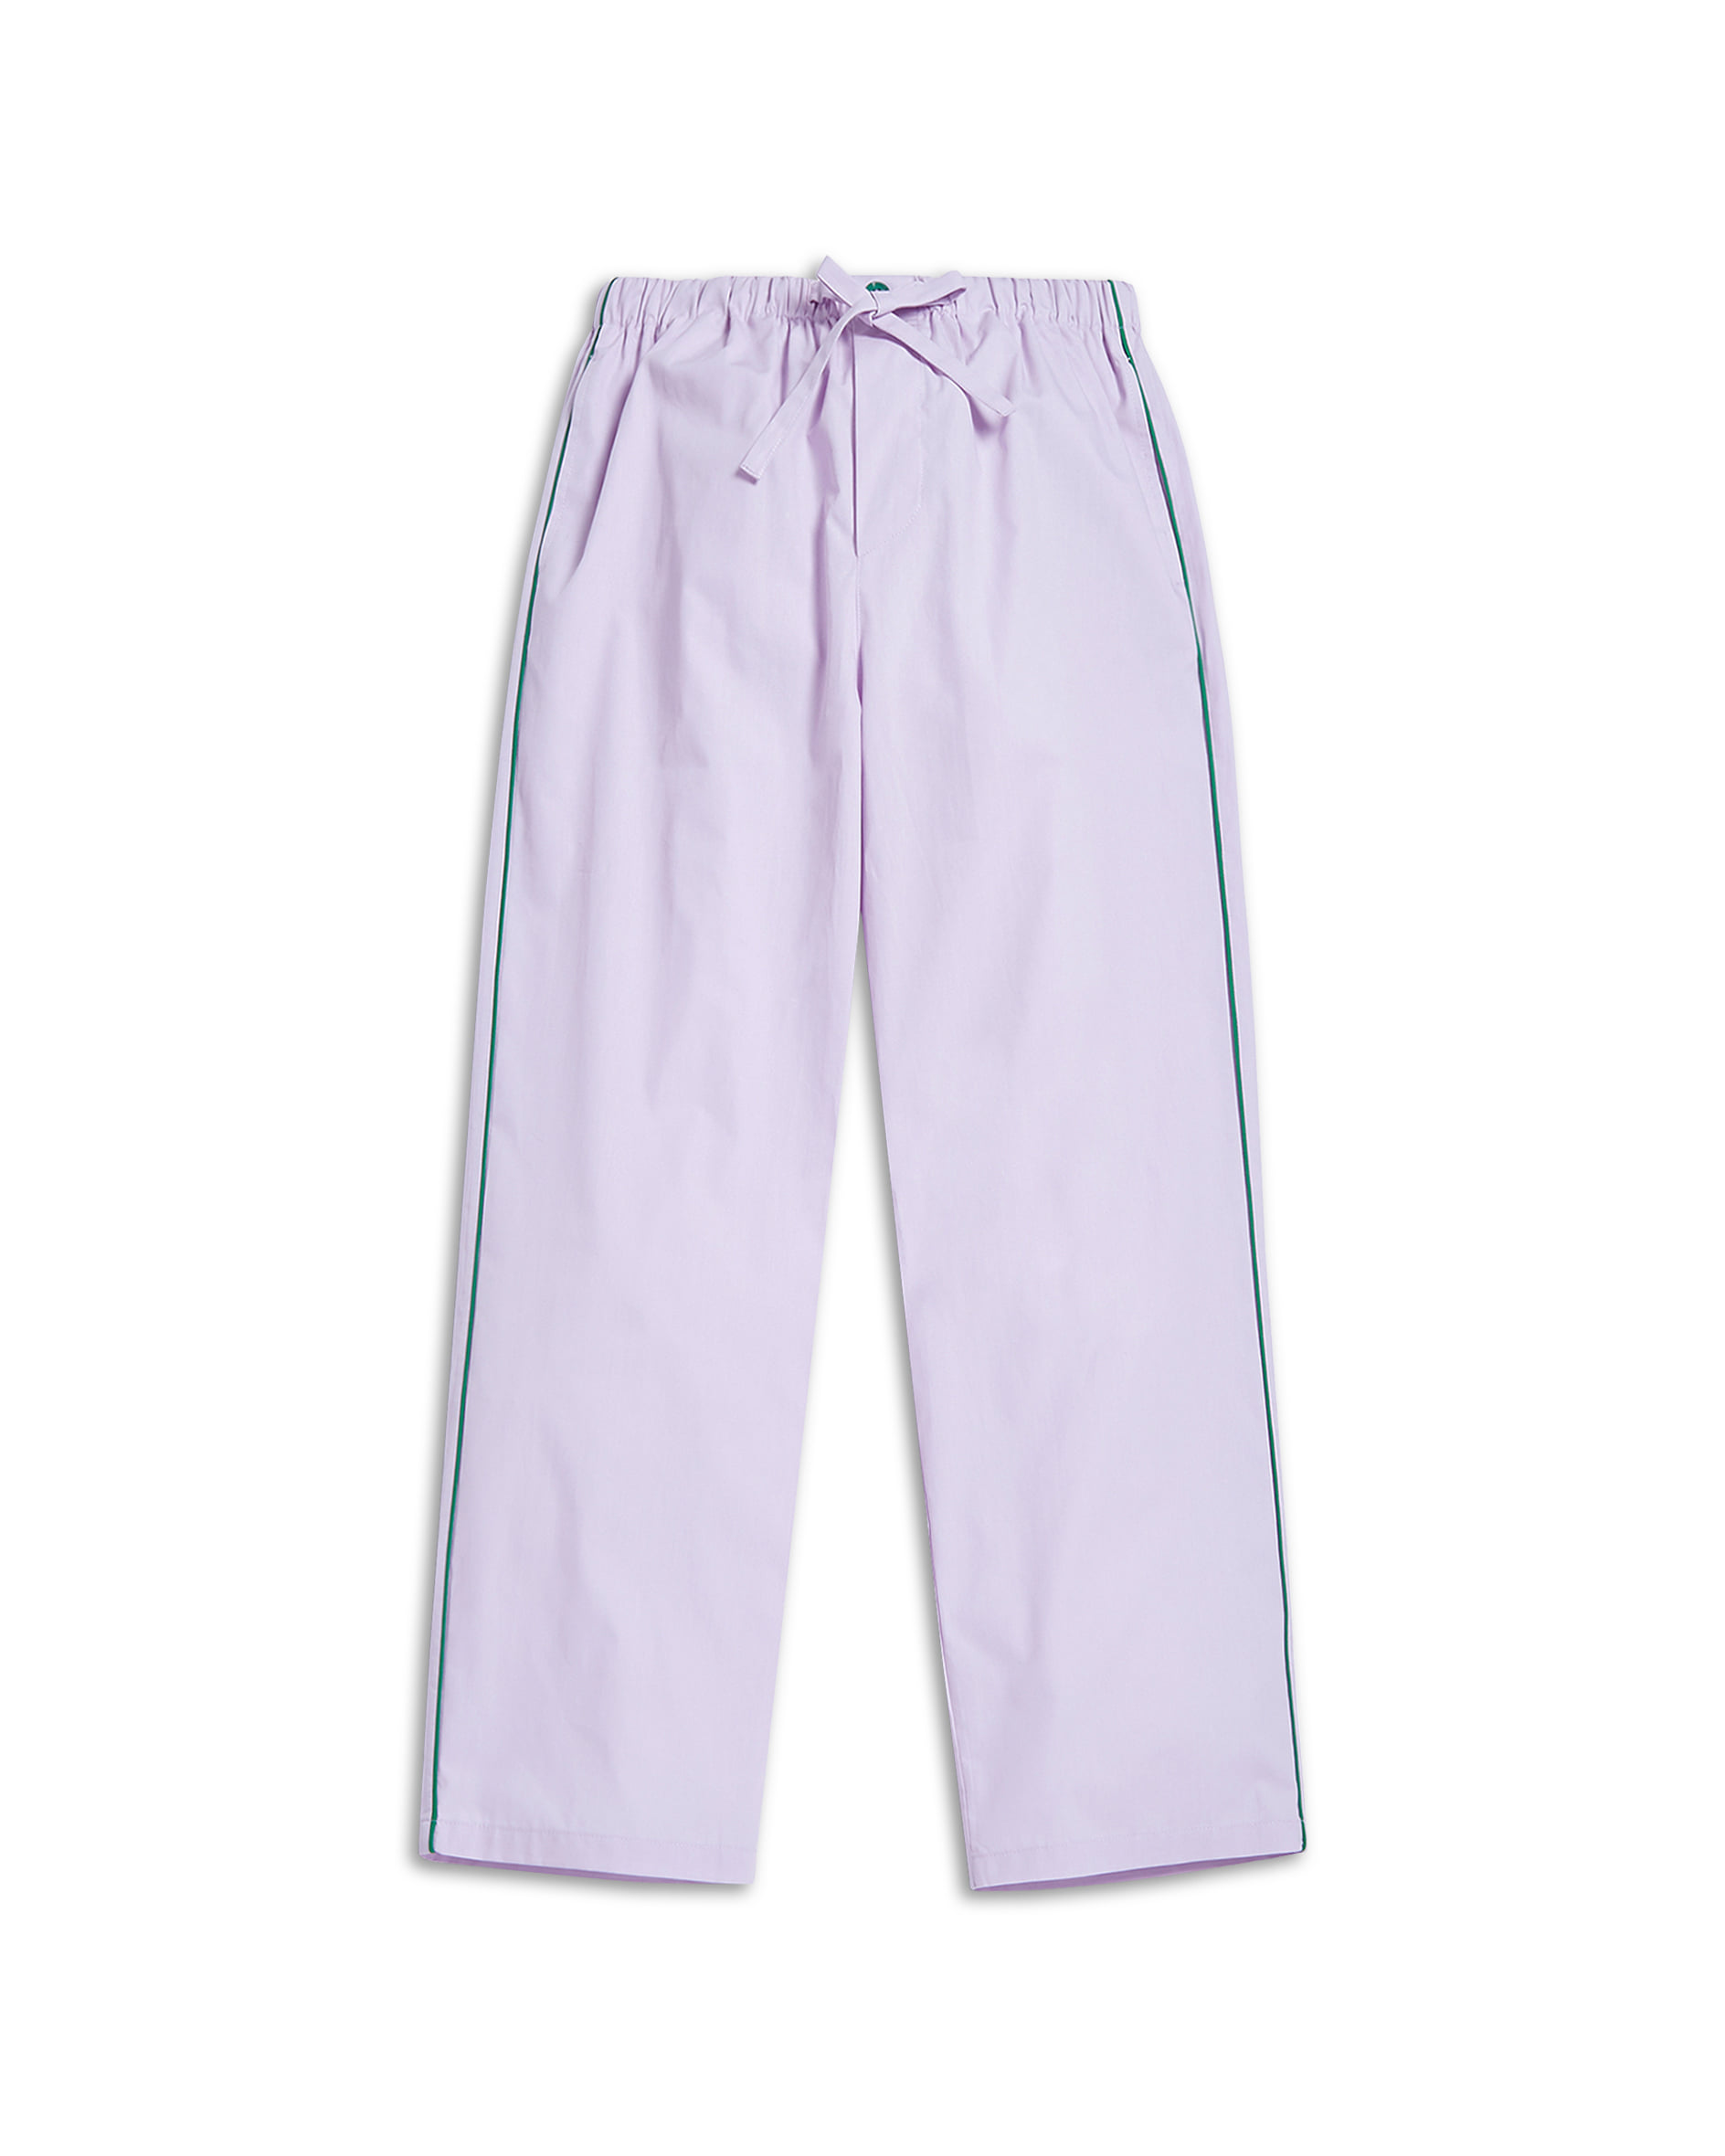 Popular Purple Pajama Set